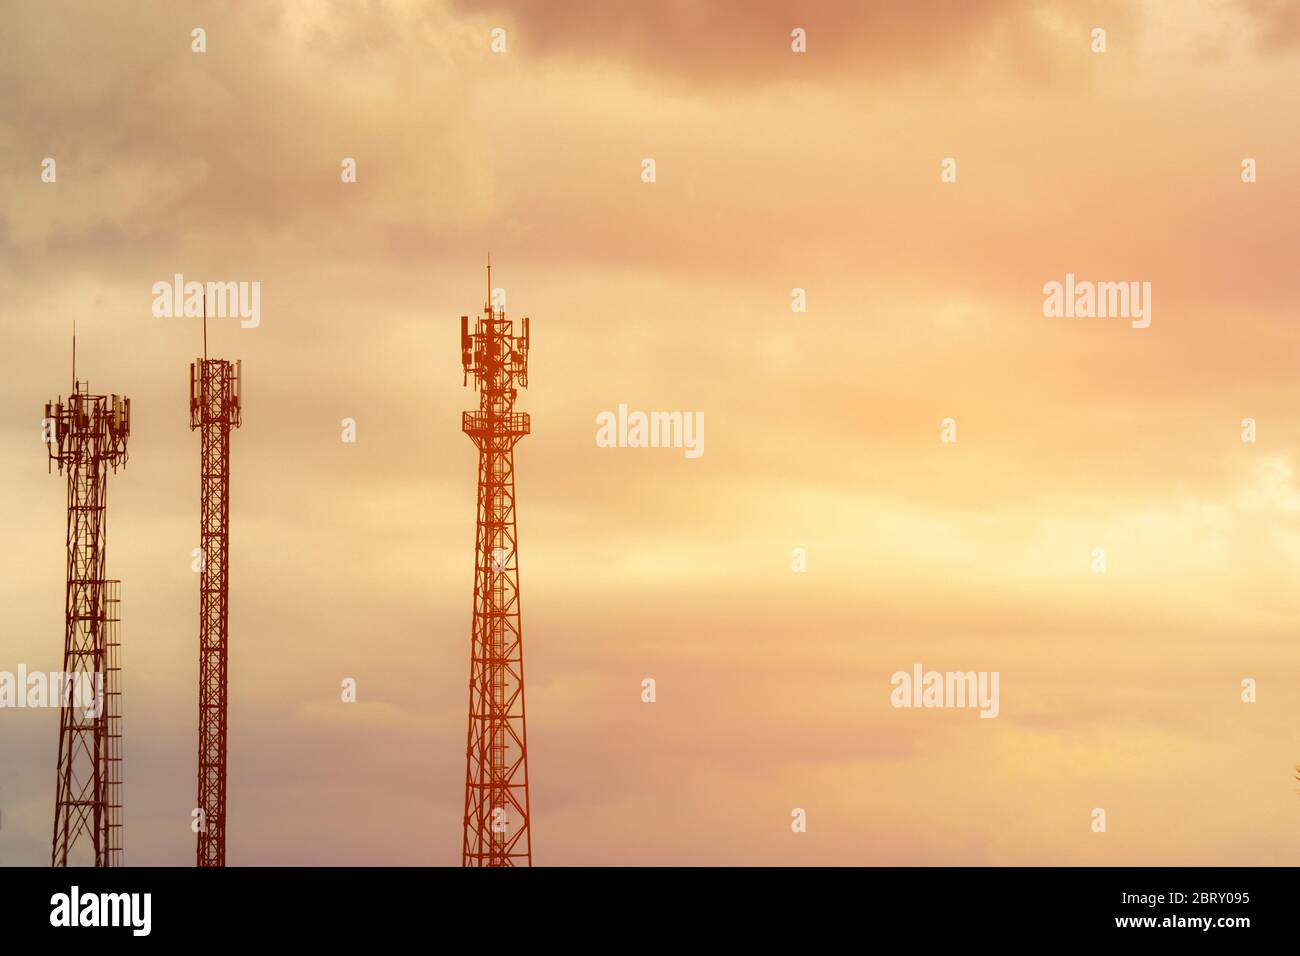 Tour d'antenne de signal silhouette sur fond ciel de coucher de soleil. Silhouette des antennes de communication mobile dans le ciel du soir Banque D'Images